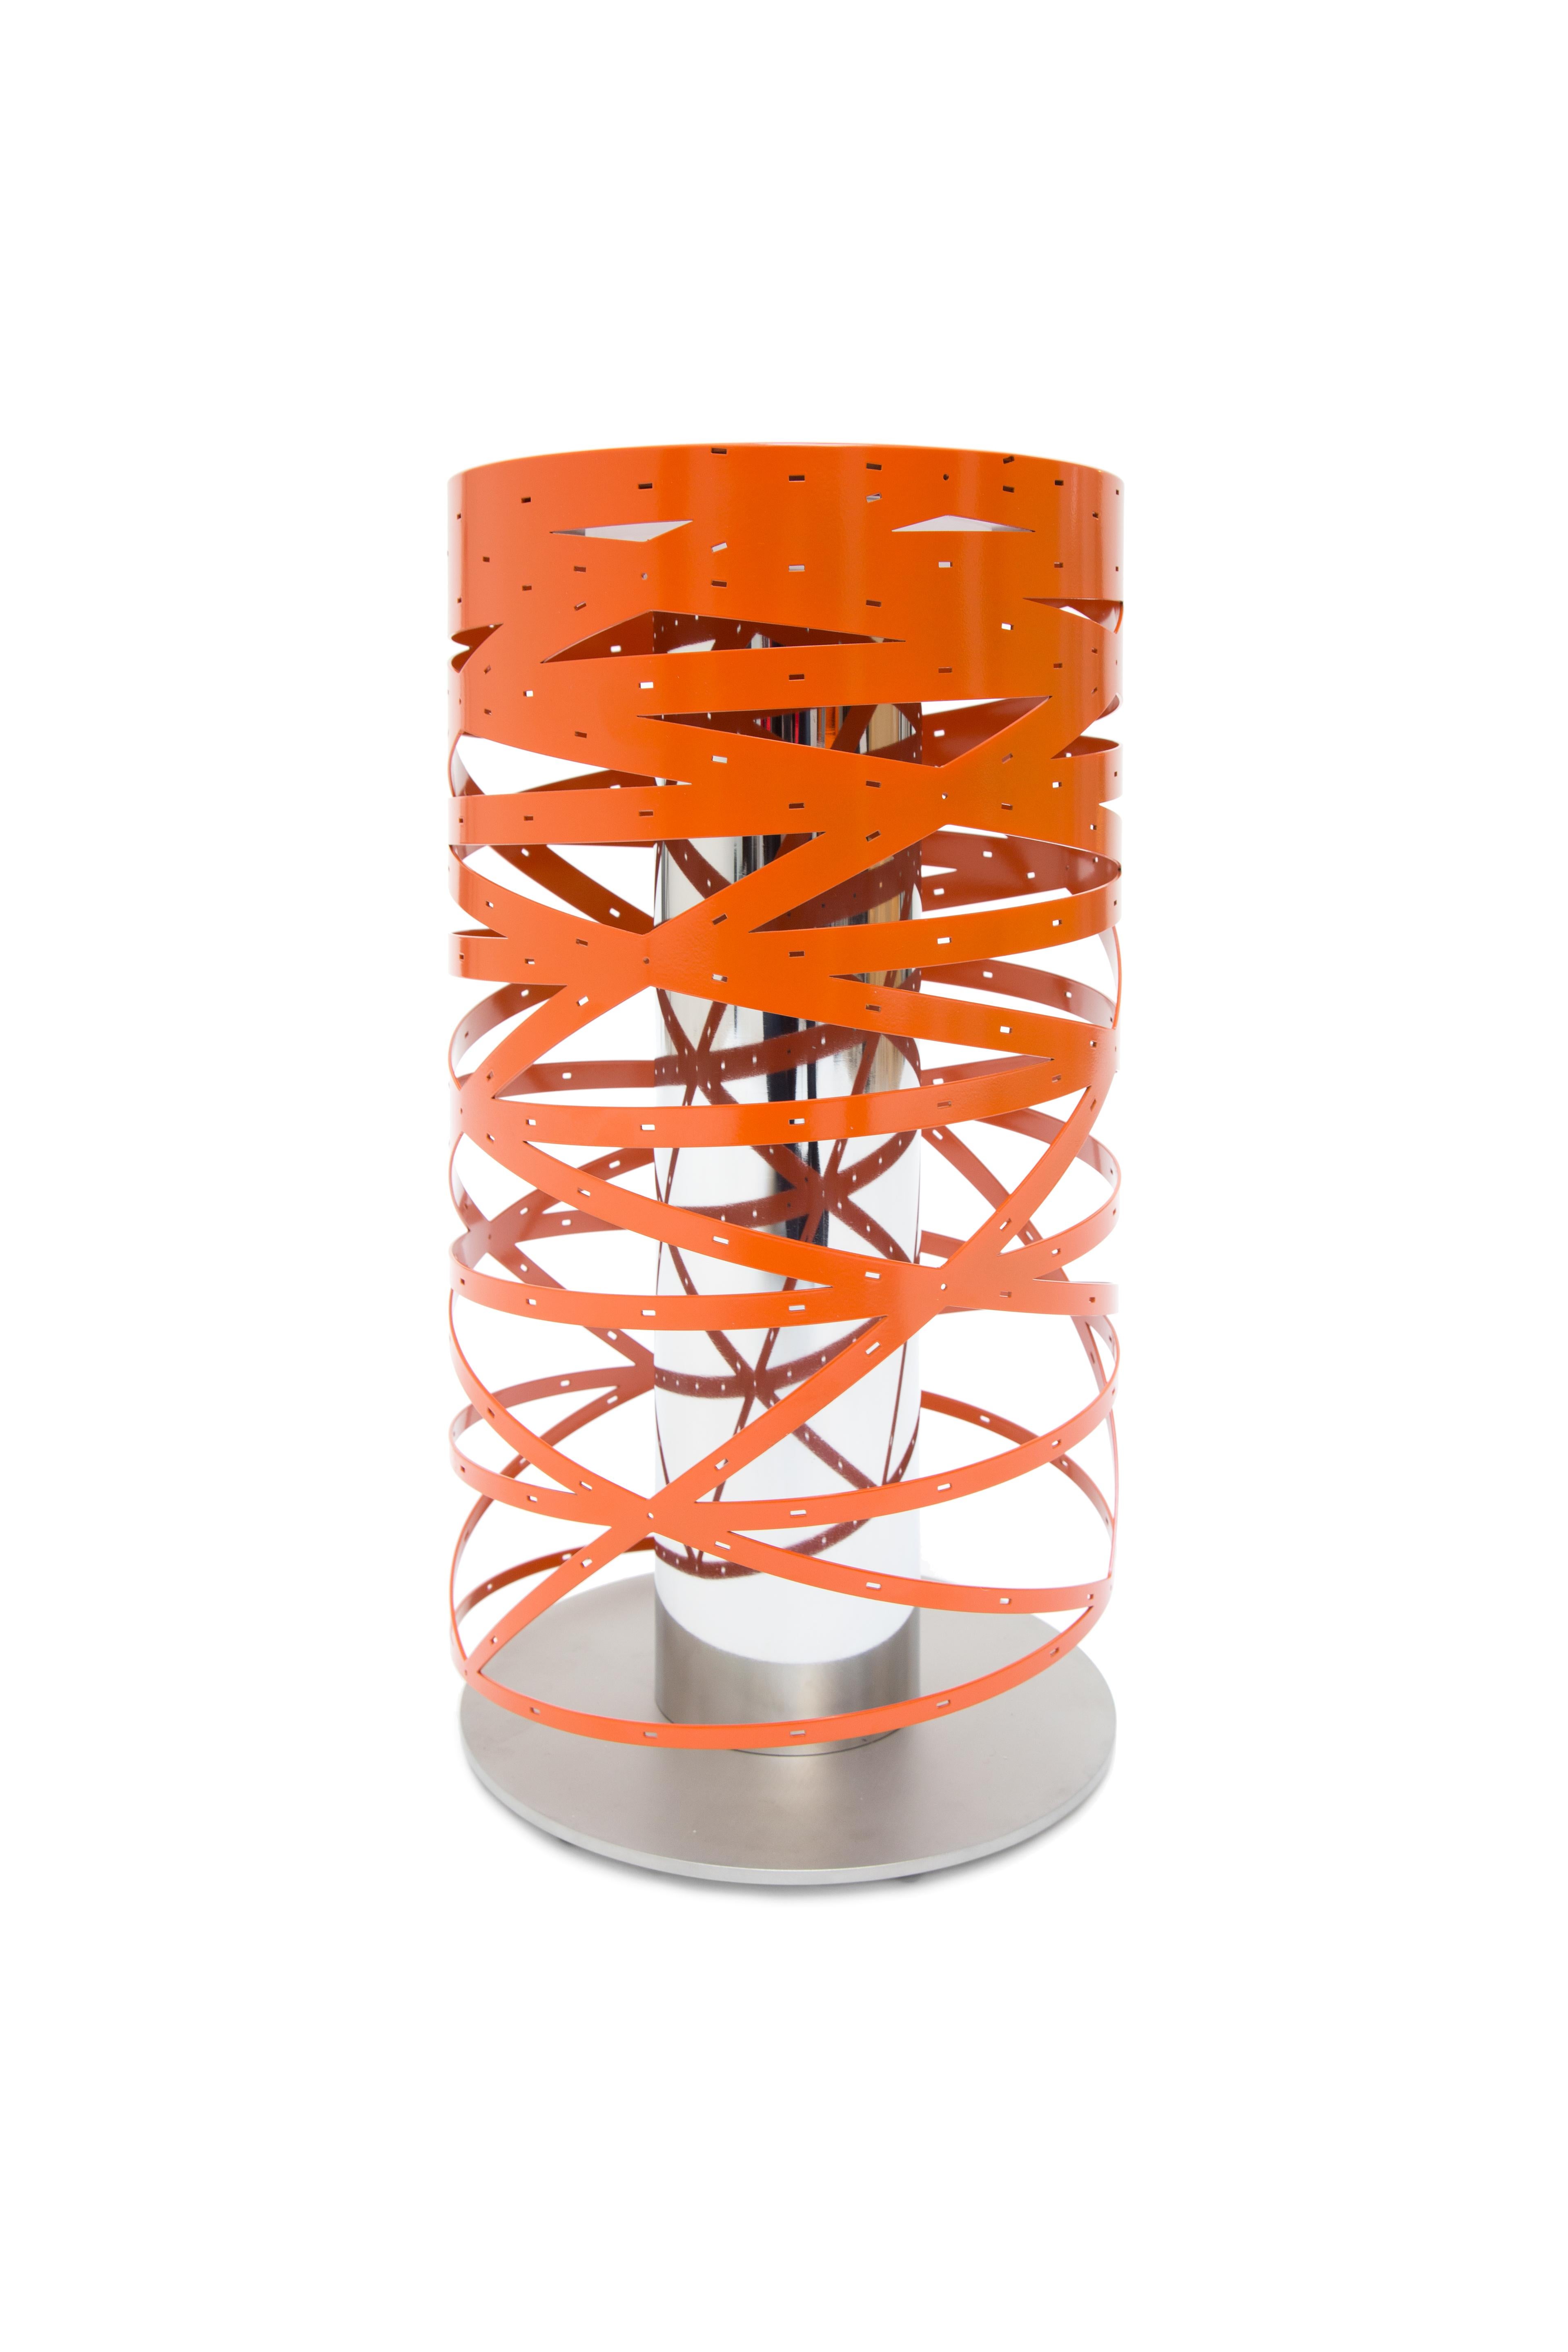 Watt est une lampe à poser simple et élégante, créée par Sylvain Dubuisson, architecte et designer en 2019. C'est simple puisqu'il a la forme d'un cylindre. Astucieux parce que l'ajourage du cylindre est un modèle mathématique unique dans lequel 6